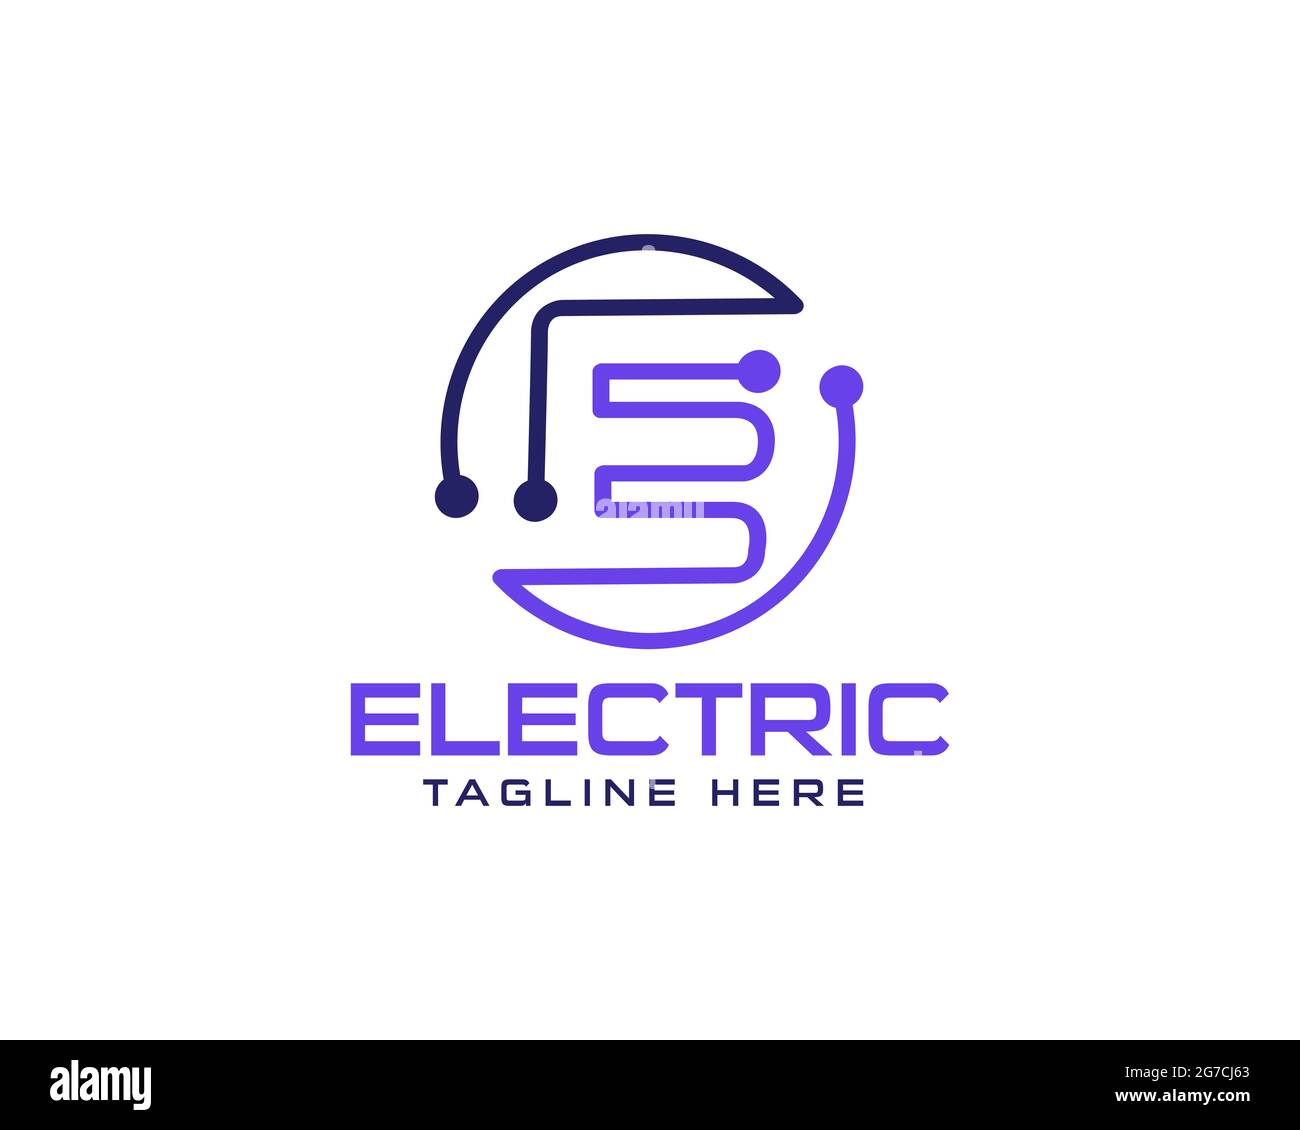 Il design iniziale del logo Letter e Electron può essere utilizzato come segno, icona o simbolo, vettore a livelli completi e facile da modificare e personalizzare dimensioni e colori, compatibile Illustrazione Vettoriale